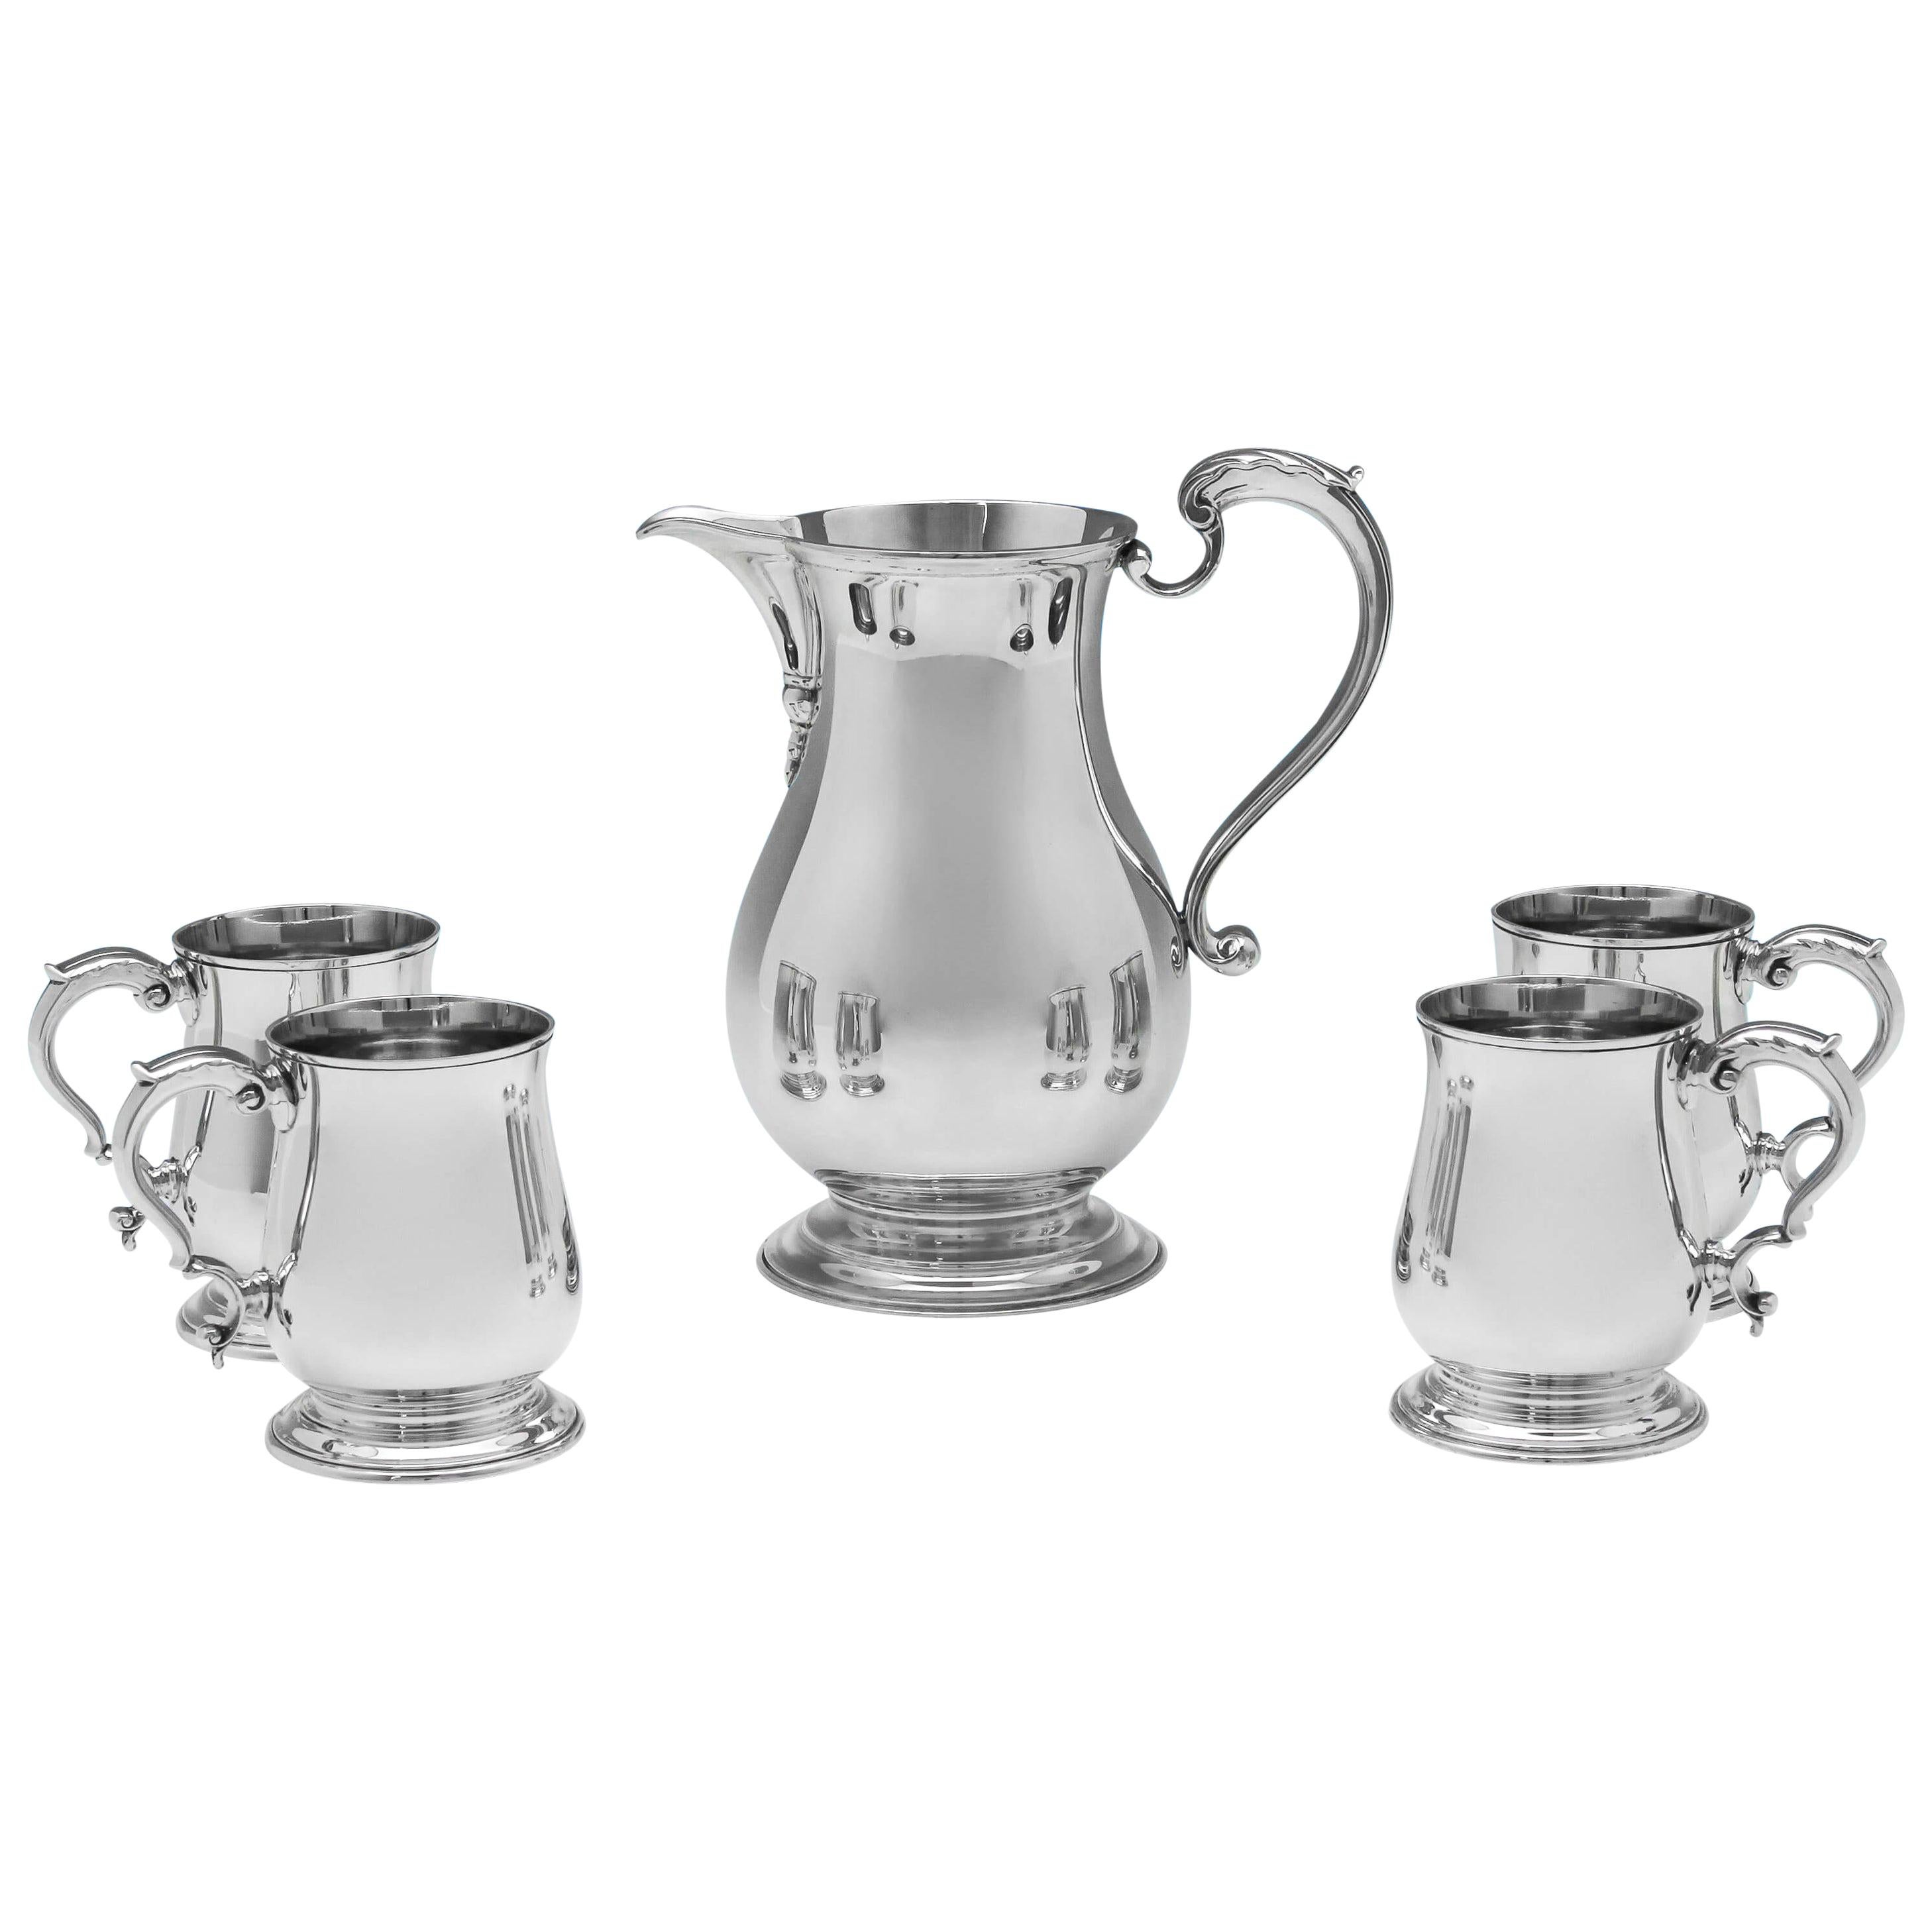 George III Style Sterling Silver Beer Jug and Set of Four Mugs by C. J. Vander